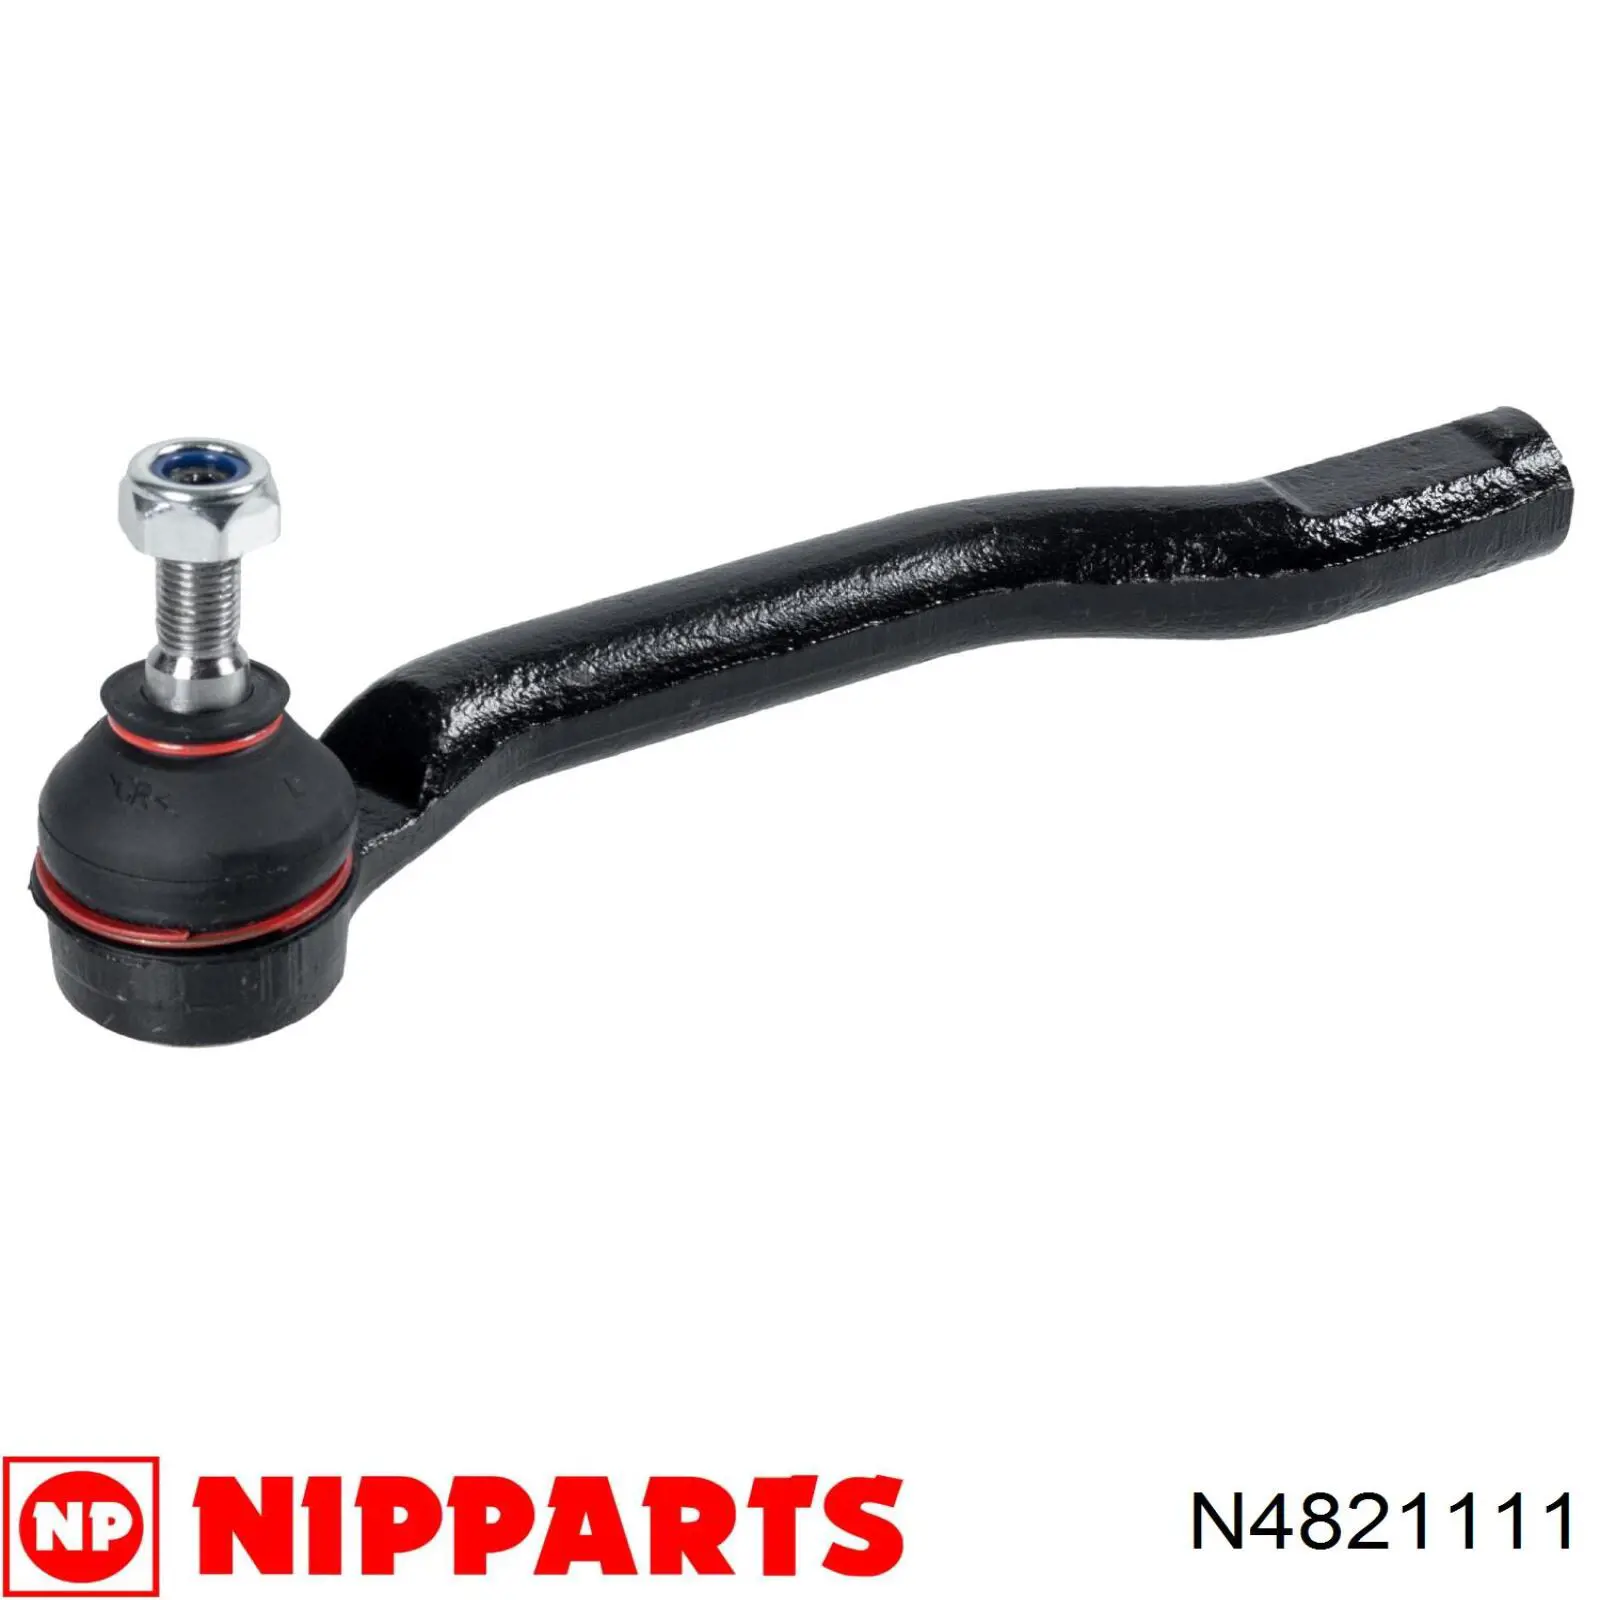 N4821111 Nipparts rótula barra de acoplamiento exterior